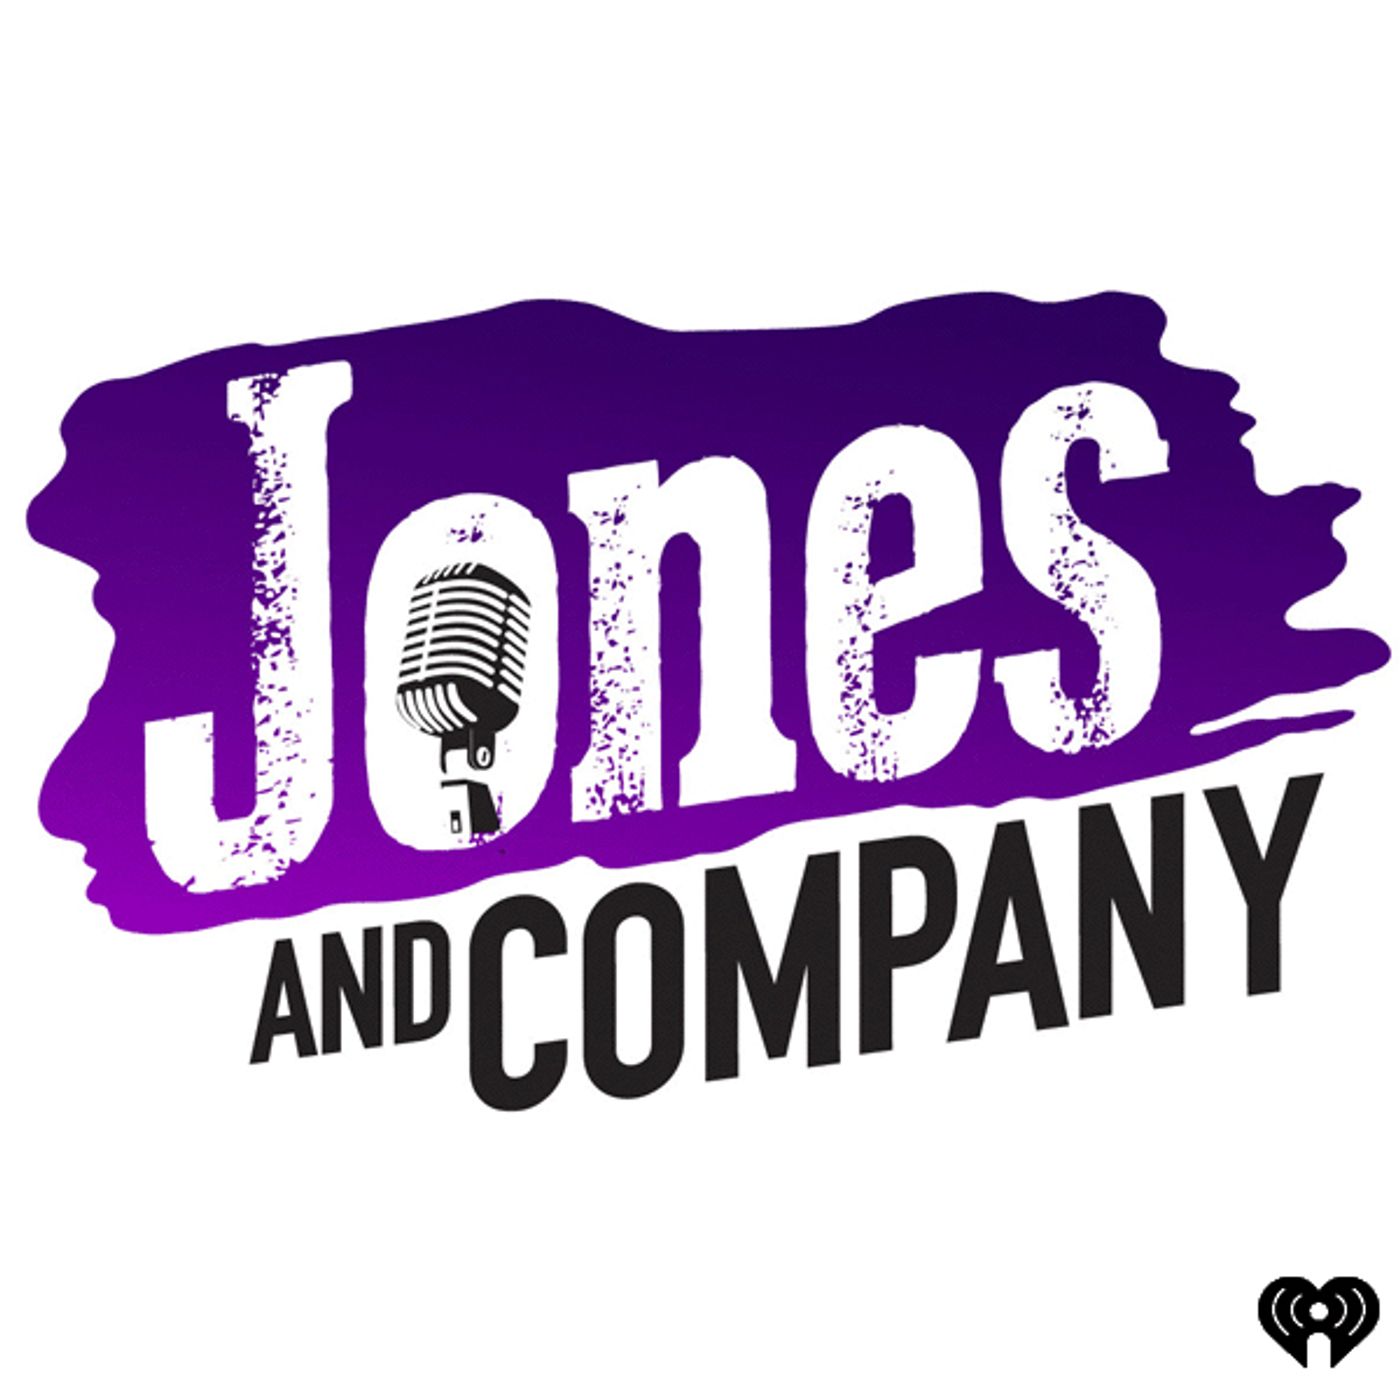 Jones & Company